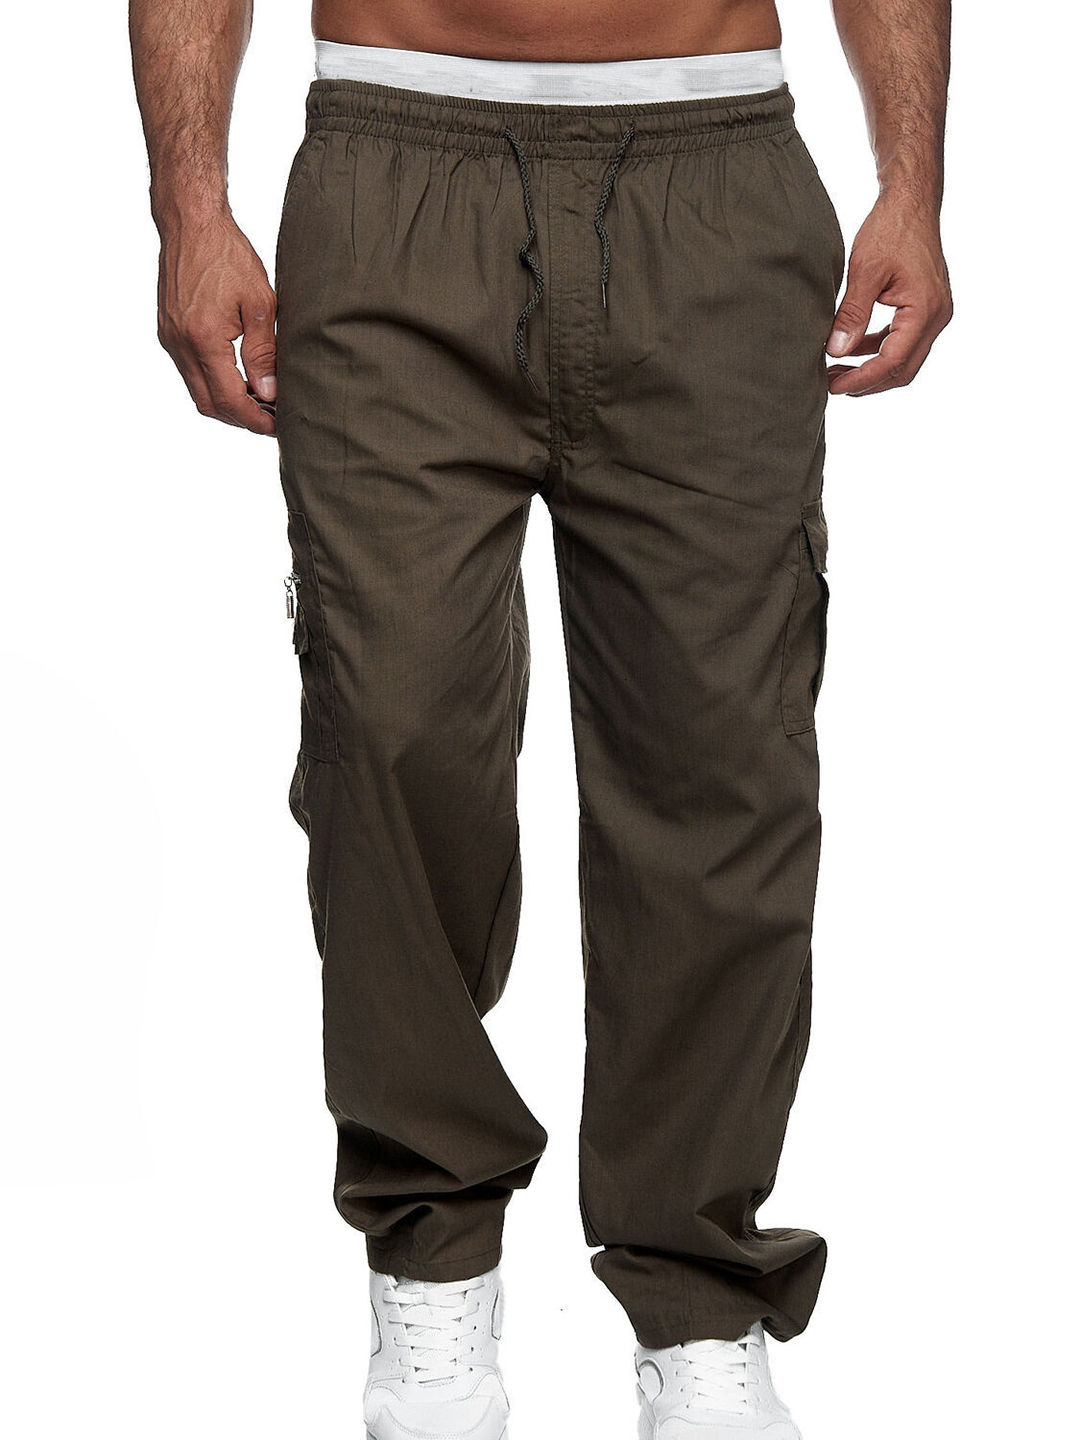 Men's Loose Pocket Overalls Outdoor Pants